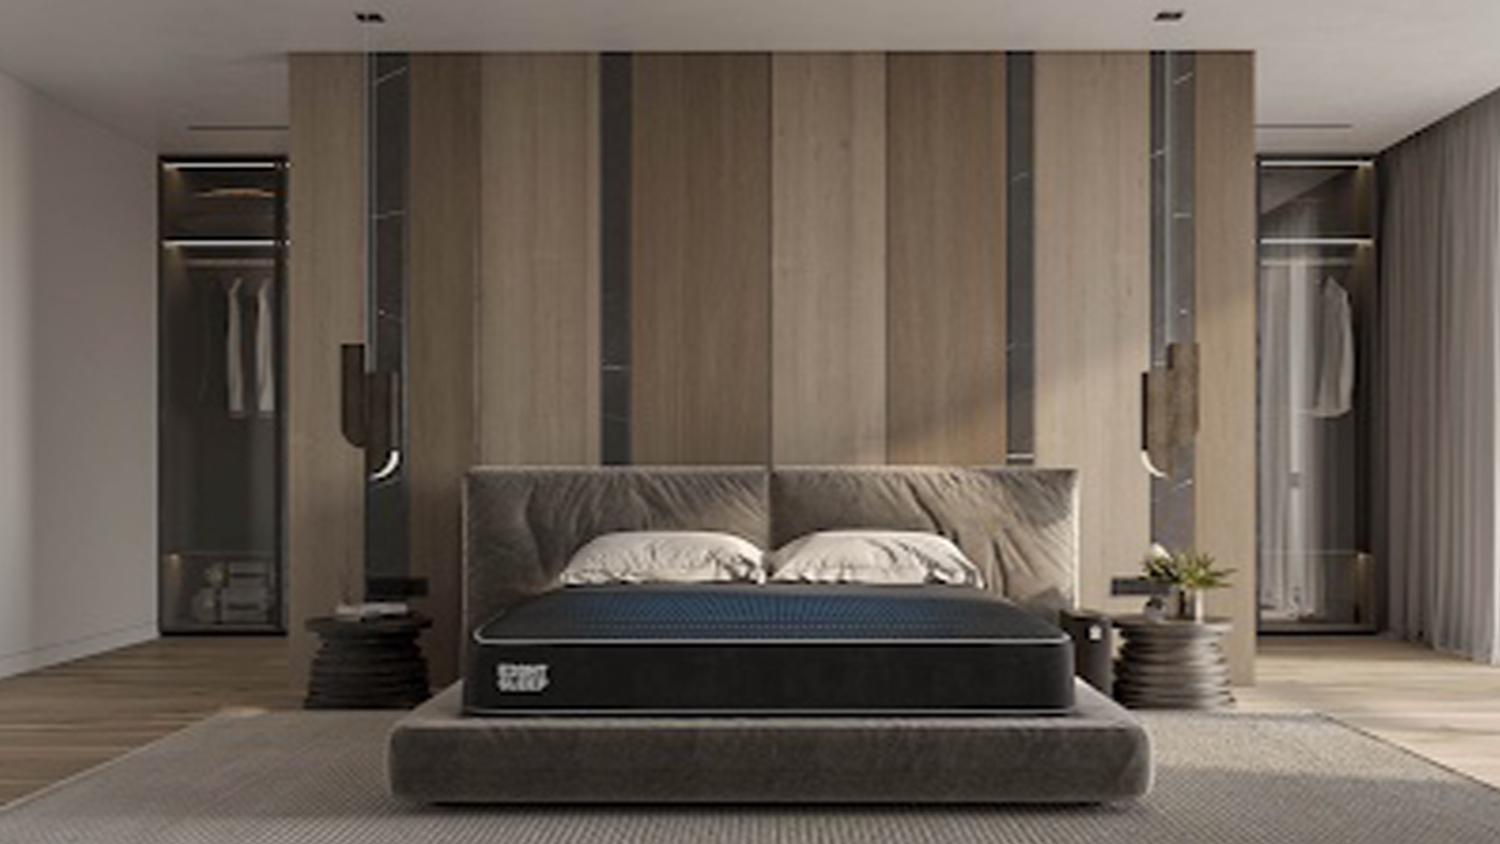 The Eight Sleep Pod Pro 3 mattress